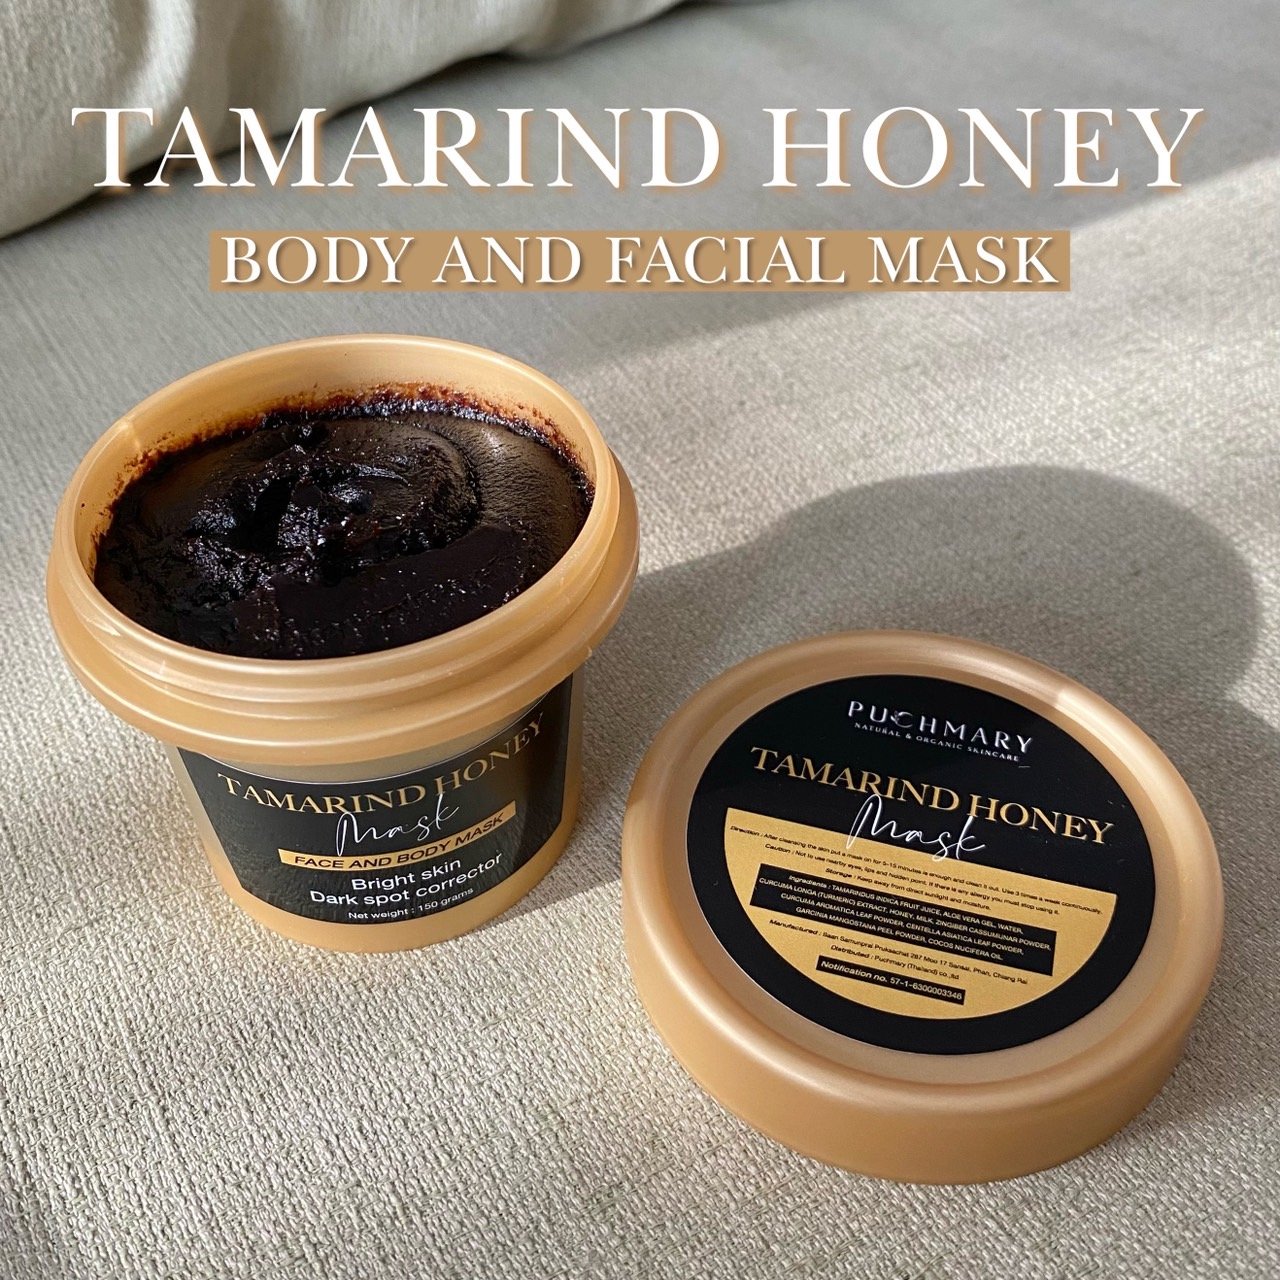 [สั่งผ่านไลน์ มีสินค้าพร้อมส่งฟรี] Puchmary Tamarind Honey Mask (7 วันรู้ผล) - ปรับแพ็คเกจใหม่ ขนาด 150g